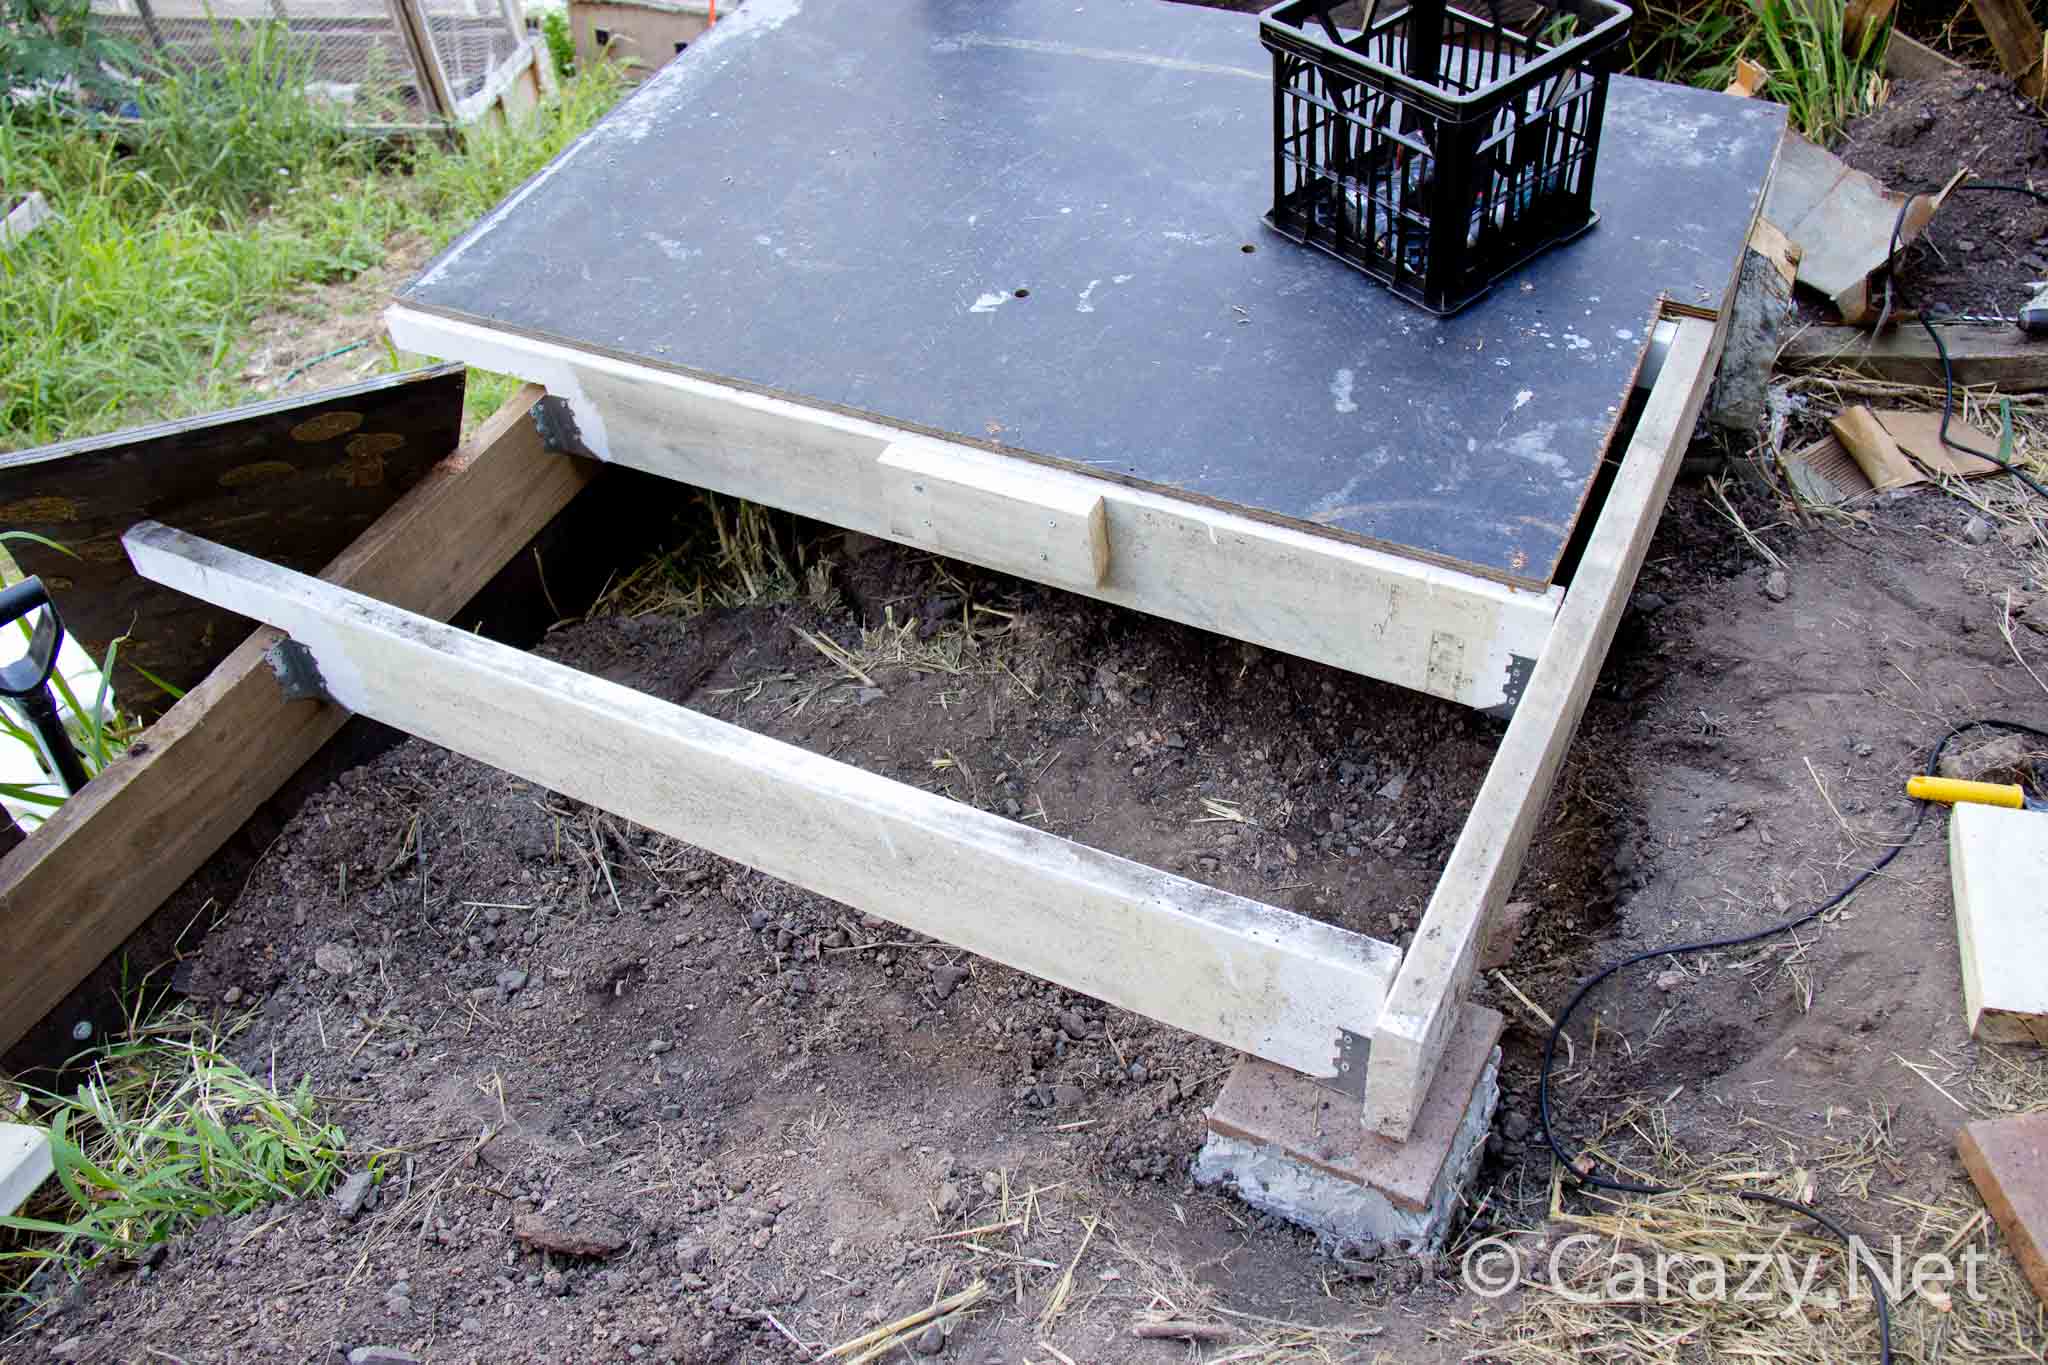 DIY Chicken coop build - The floor